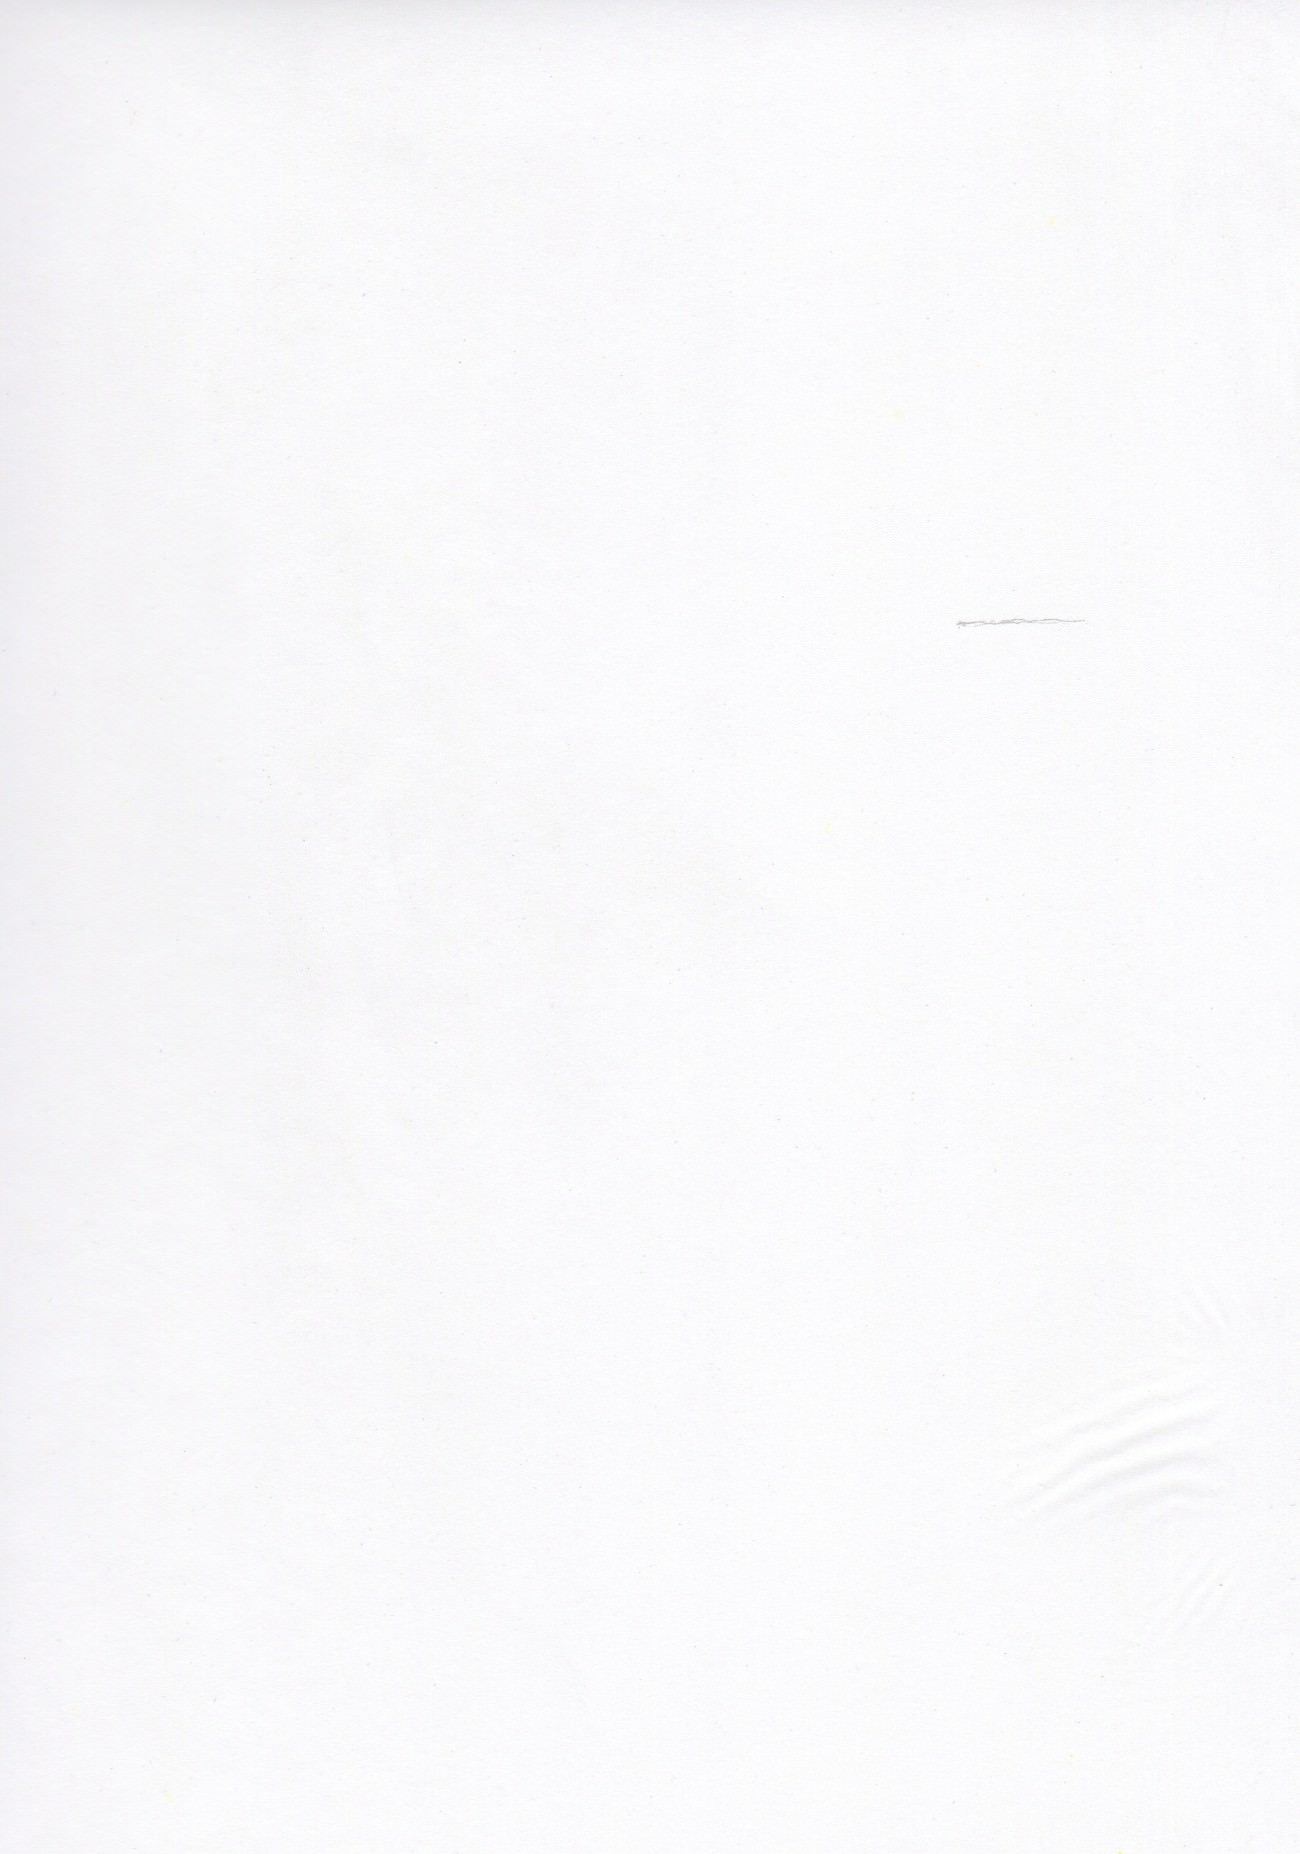 Steve Giasson. Performance invisible n° 54 (Commissarier quelques passages d’un livre (emprunté dans une bibliothèque), en les soulignant délicatement au plomb).
Performeur : Loucas Braconnier. "Résidu de la performance  (est laborum)", crayon plomb sur papier calque, 11 x 14 po. Crédit photographique : Loucas Braconnier. 26 mars 2018.